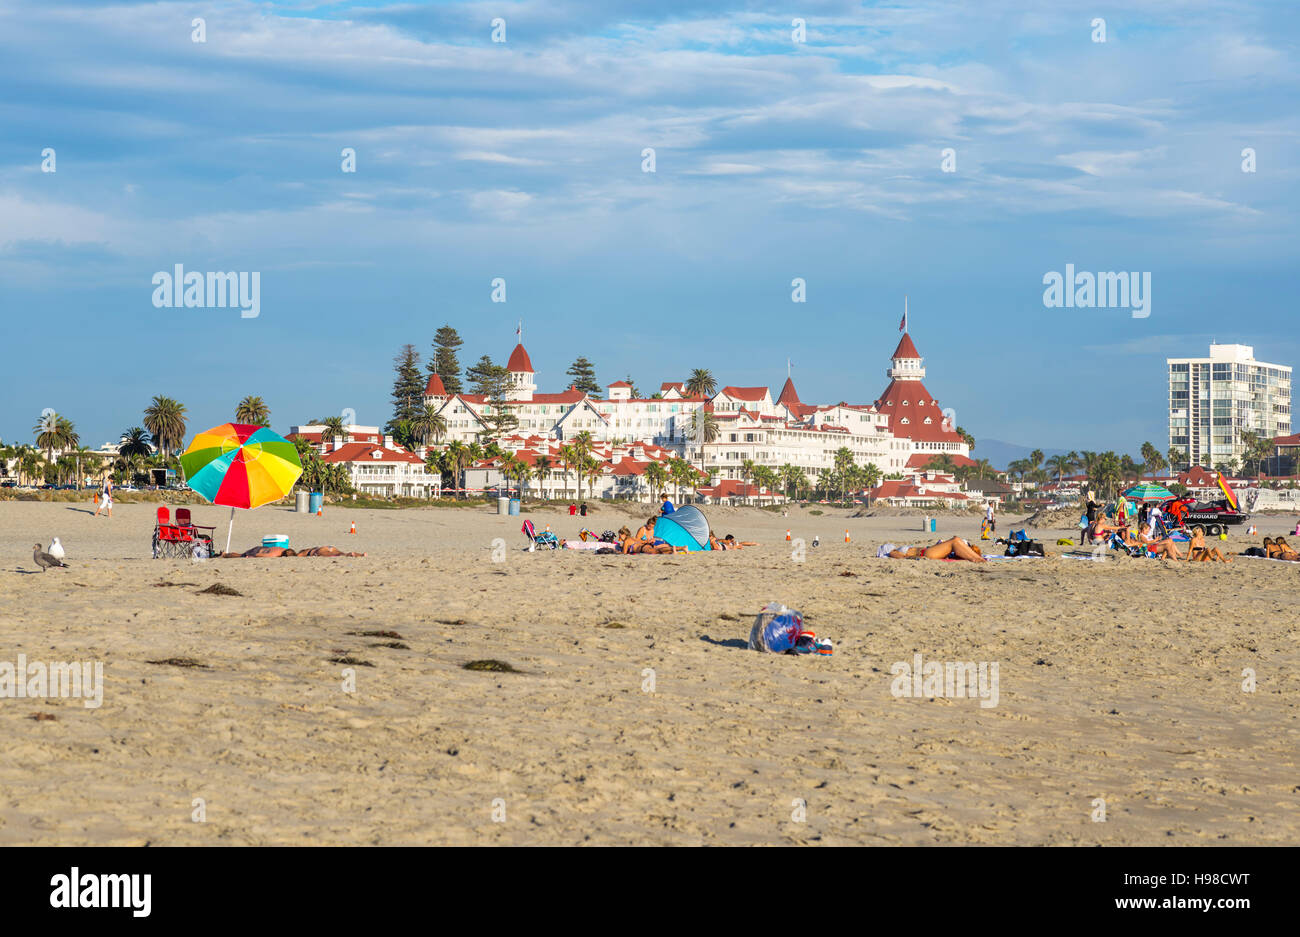 Les gens sur la plage centrale de l'été, Coronado. Coronado, Californie, USA. Banque D'Images